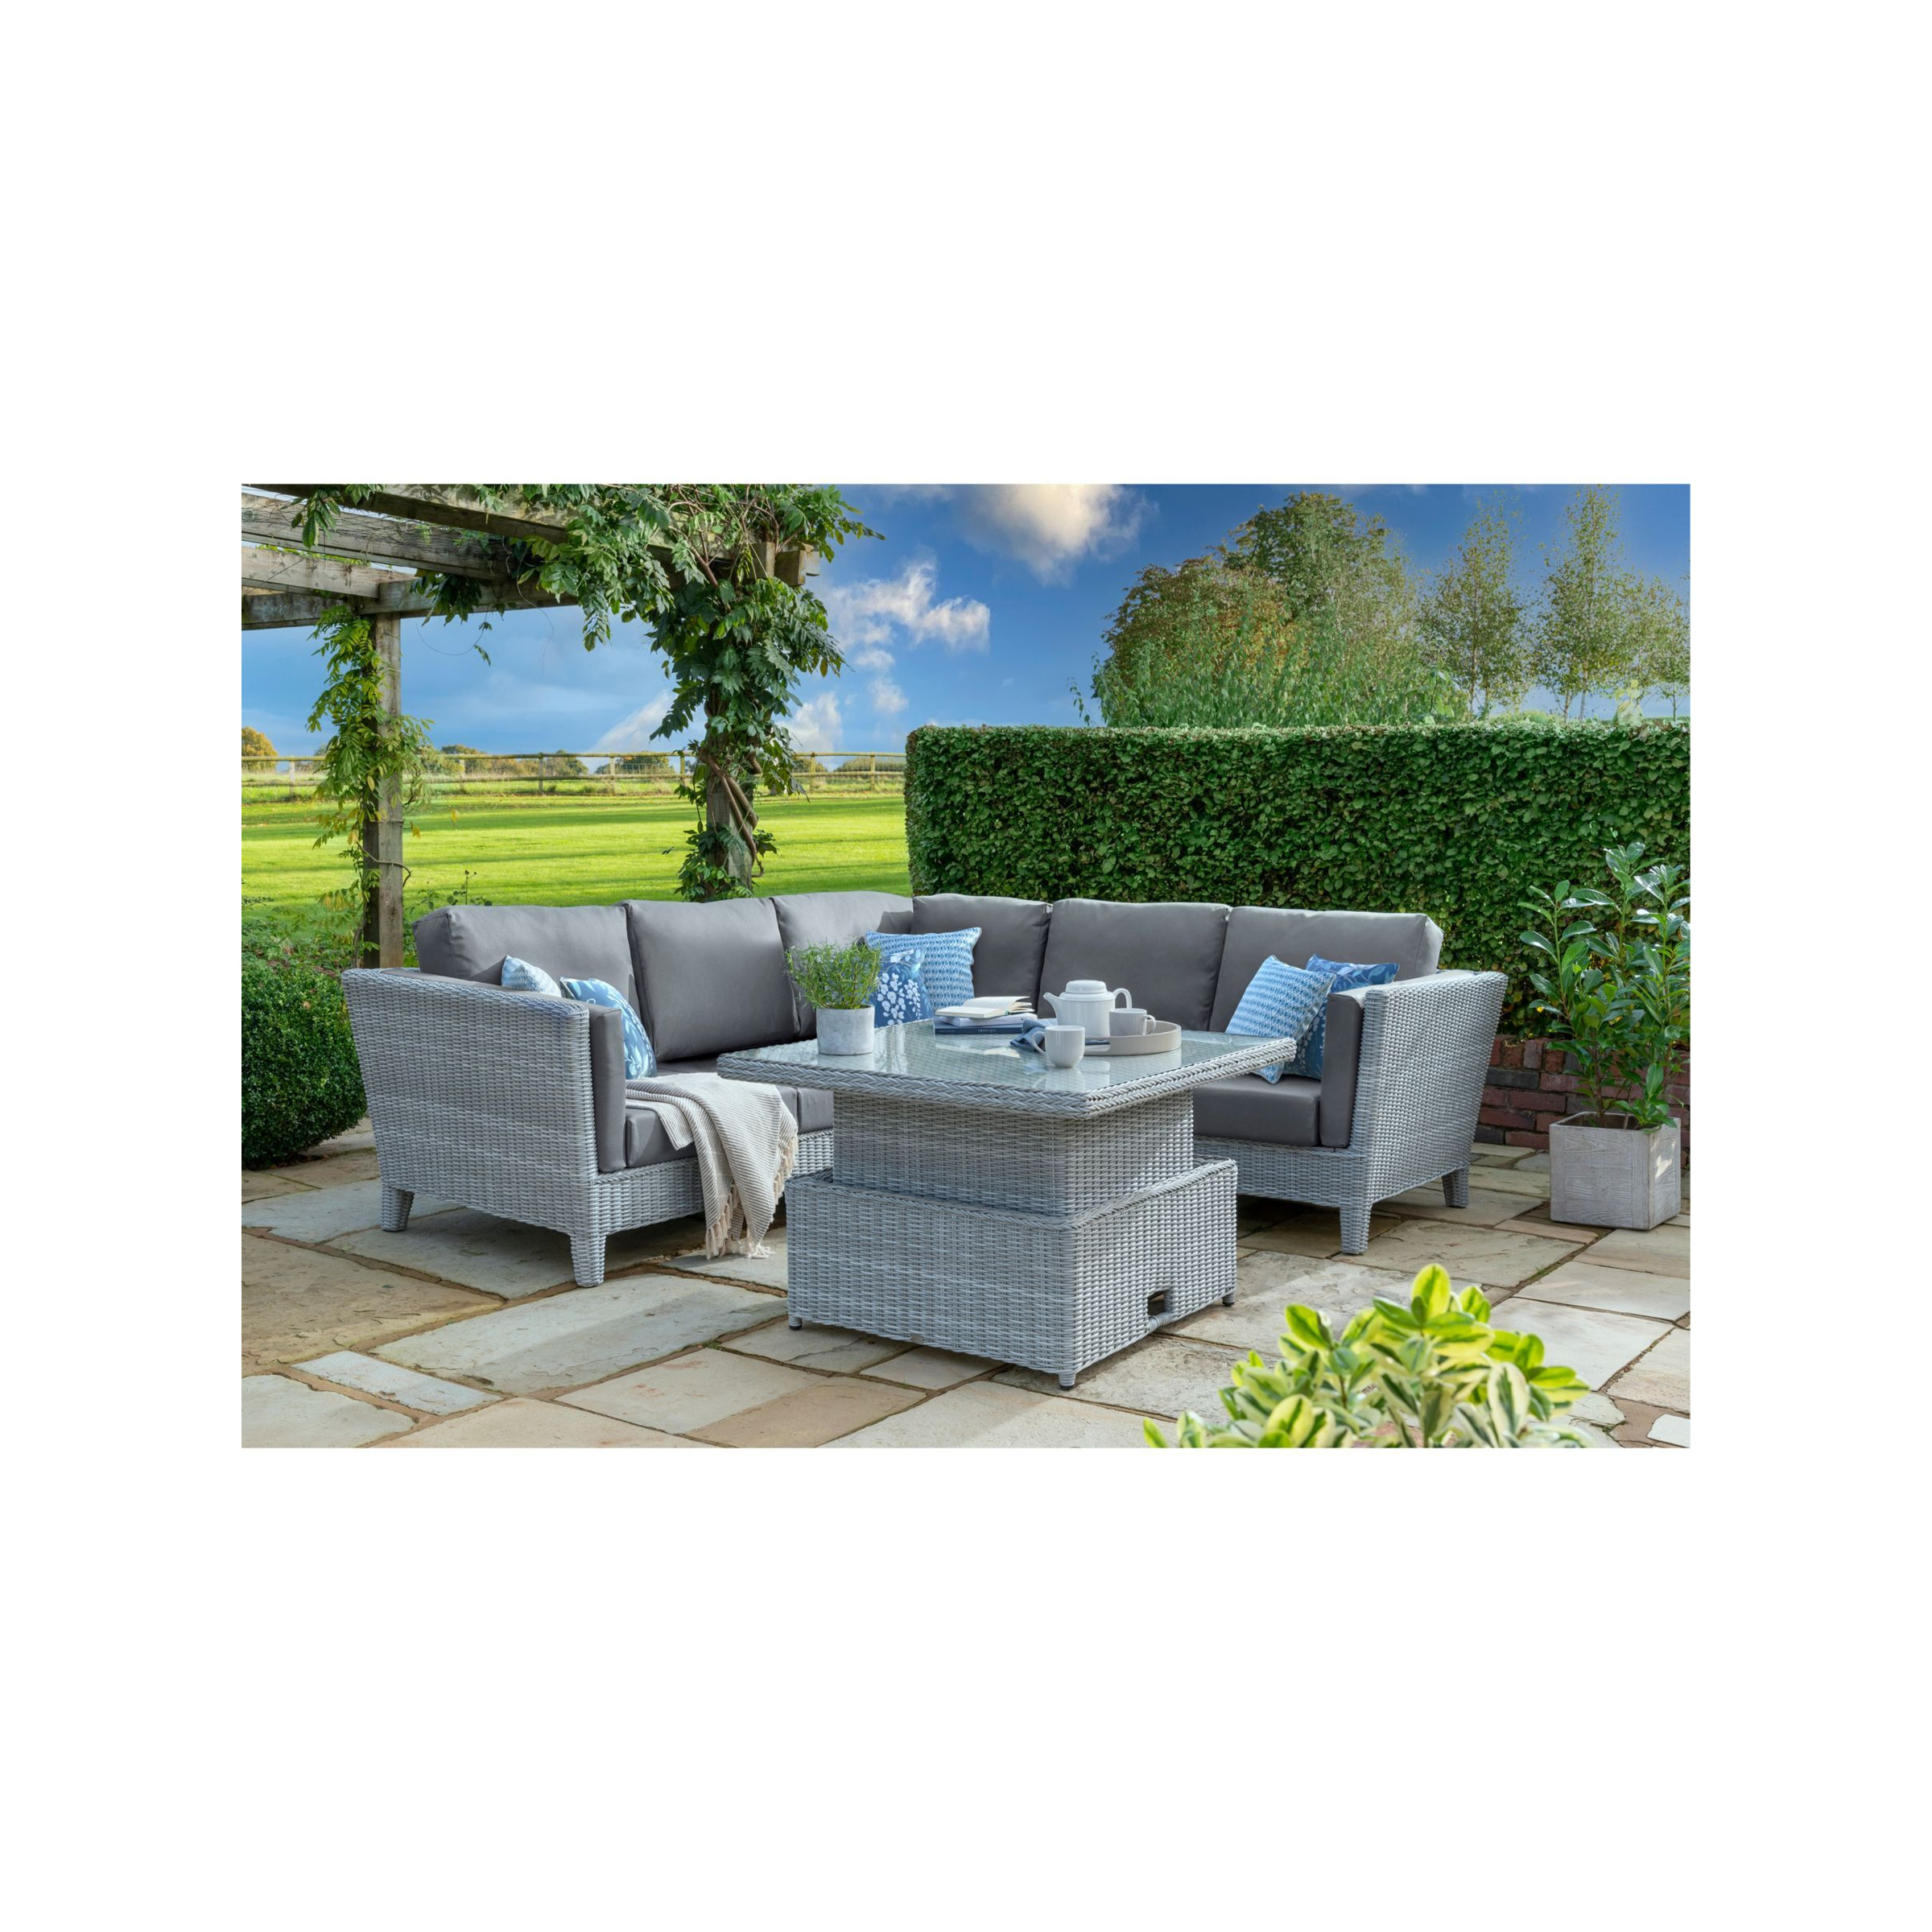 Daro Byron 5-Seater Corner Garden Lounge/Casual Dining Set, Grey Tissé - image 1